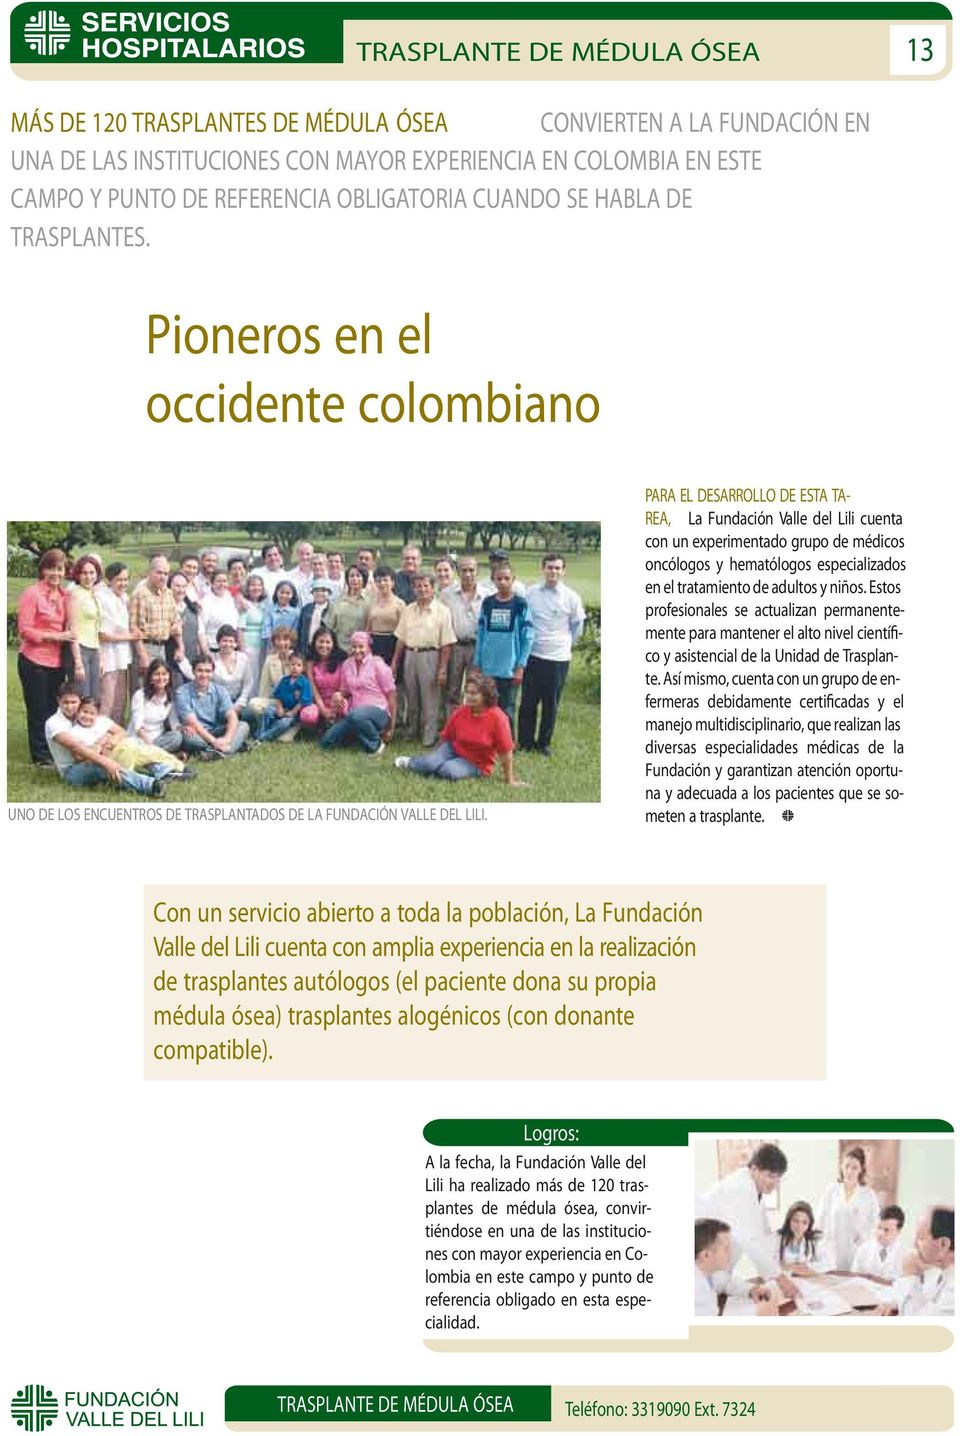 PARA EL DESARROLLO DE ESTA TA- REA, La Fundación Valle del Lili cuenta con un experimentado grupo de médicos oncólogos y hematólogos especializados en el tratamiento de adultos y niños.